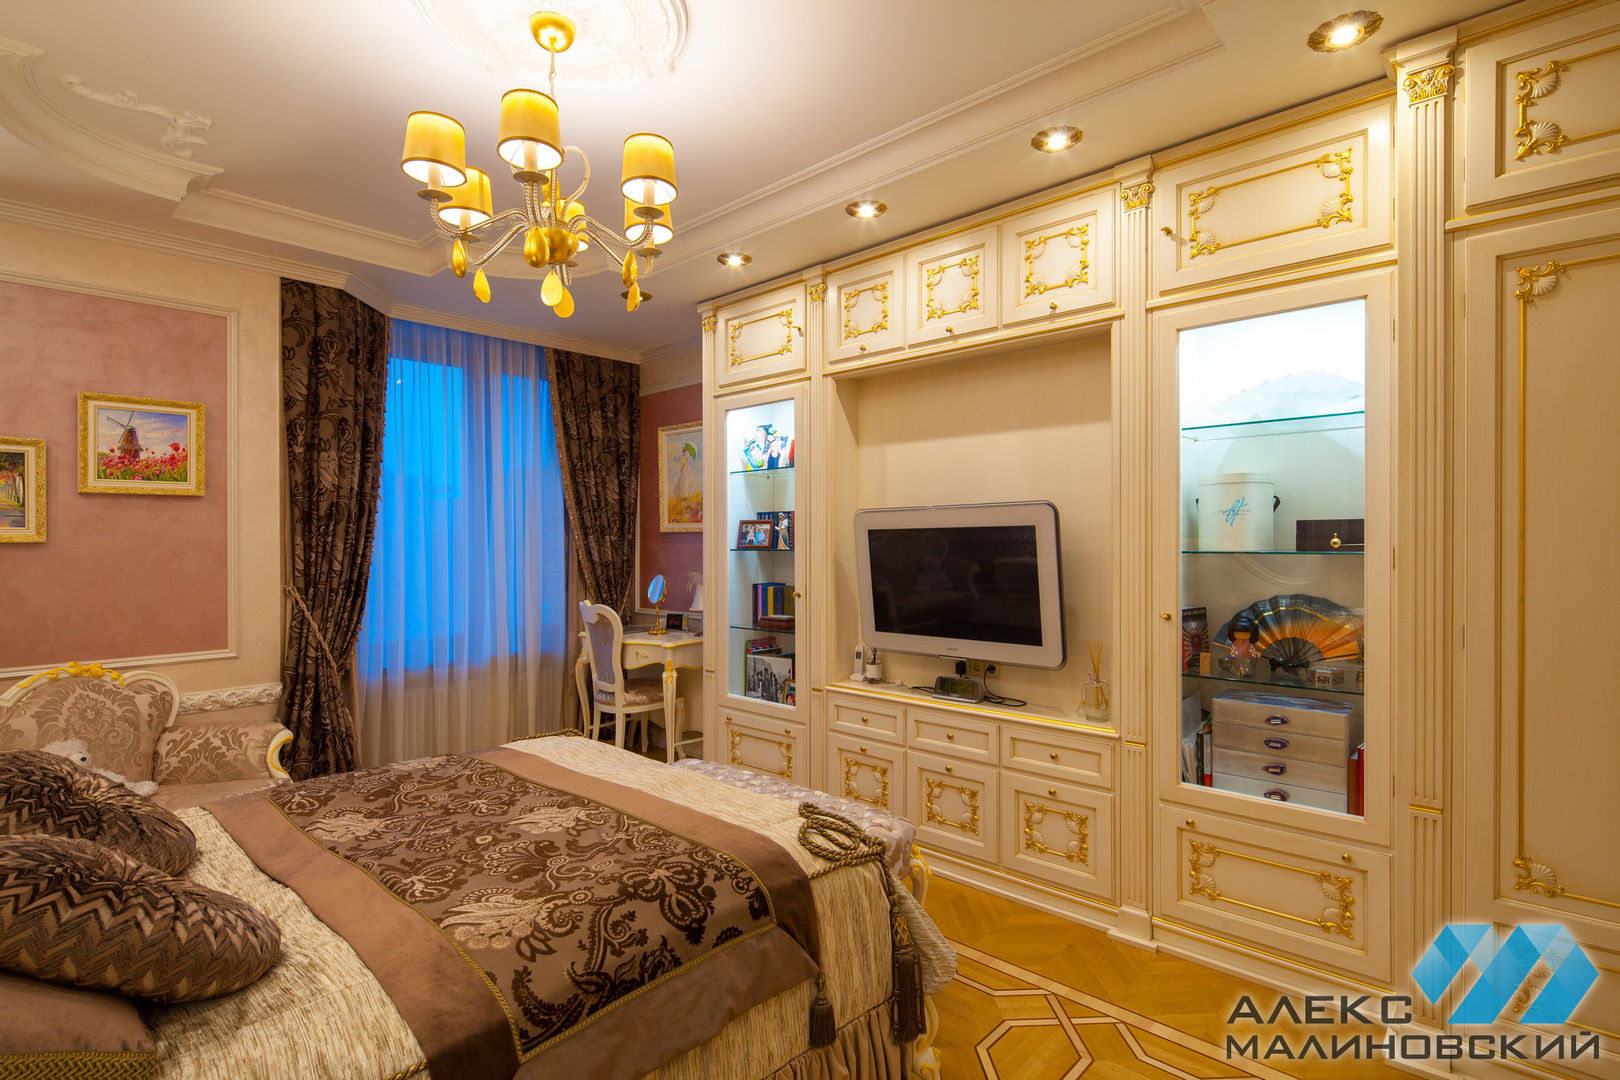 Изящная классика на Старом Арбате (воплощение), Александр Малиновский Александр Малиновский Classic style bedroom